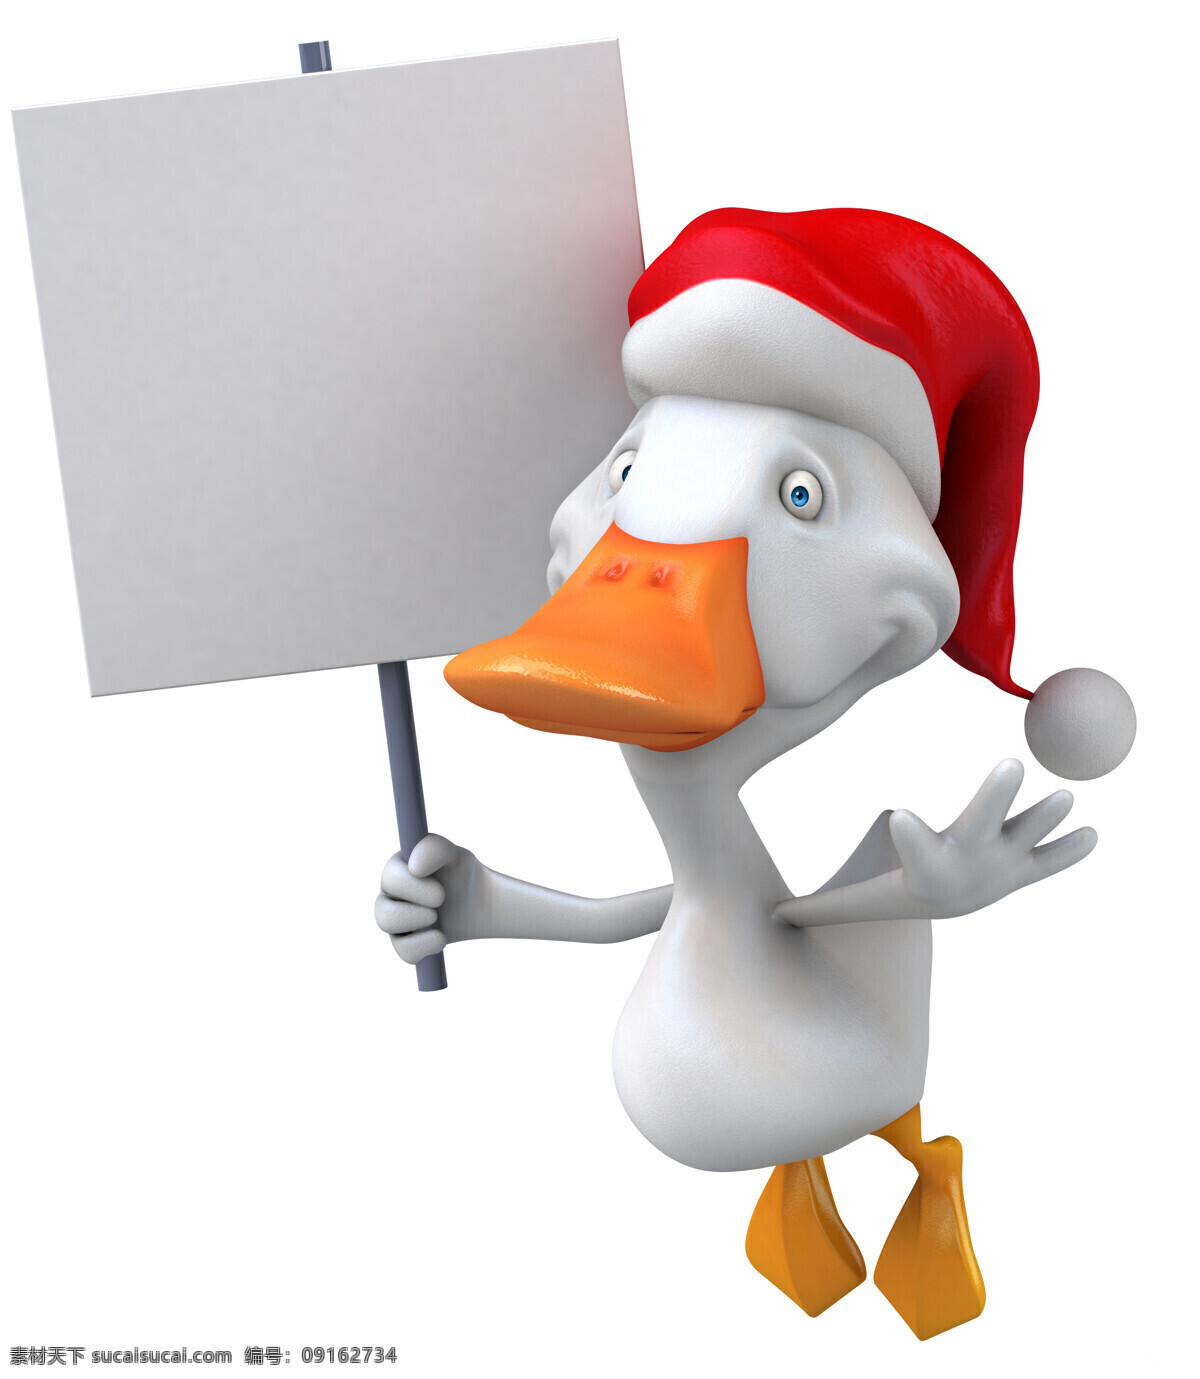 3d 动物图片 3d设计 圣诞节 圣诞帽 鸭子 3d动物 卡通动物表情 3d模型素材 其他3d模型